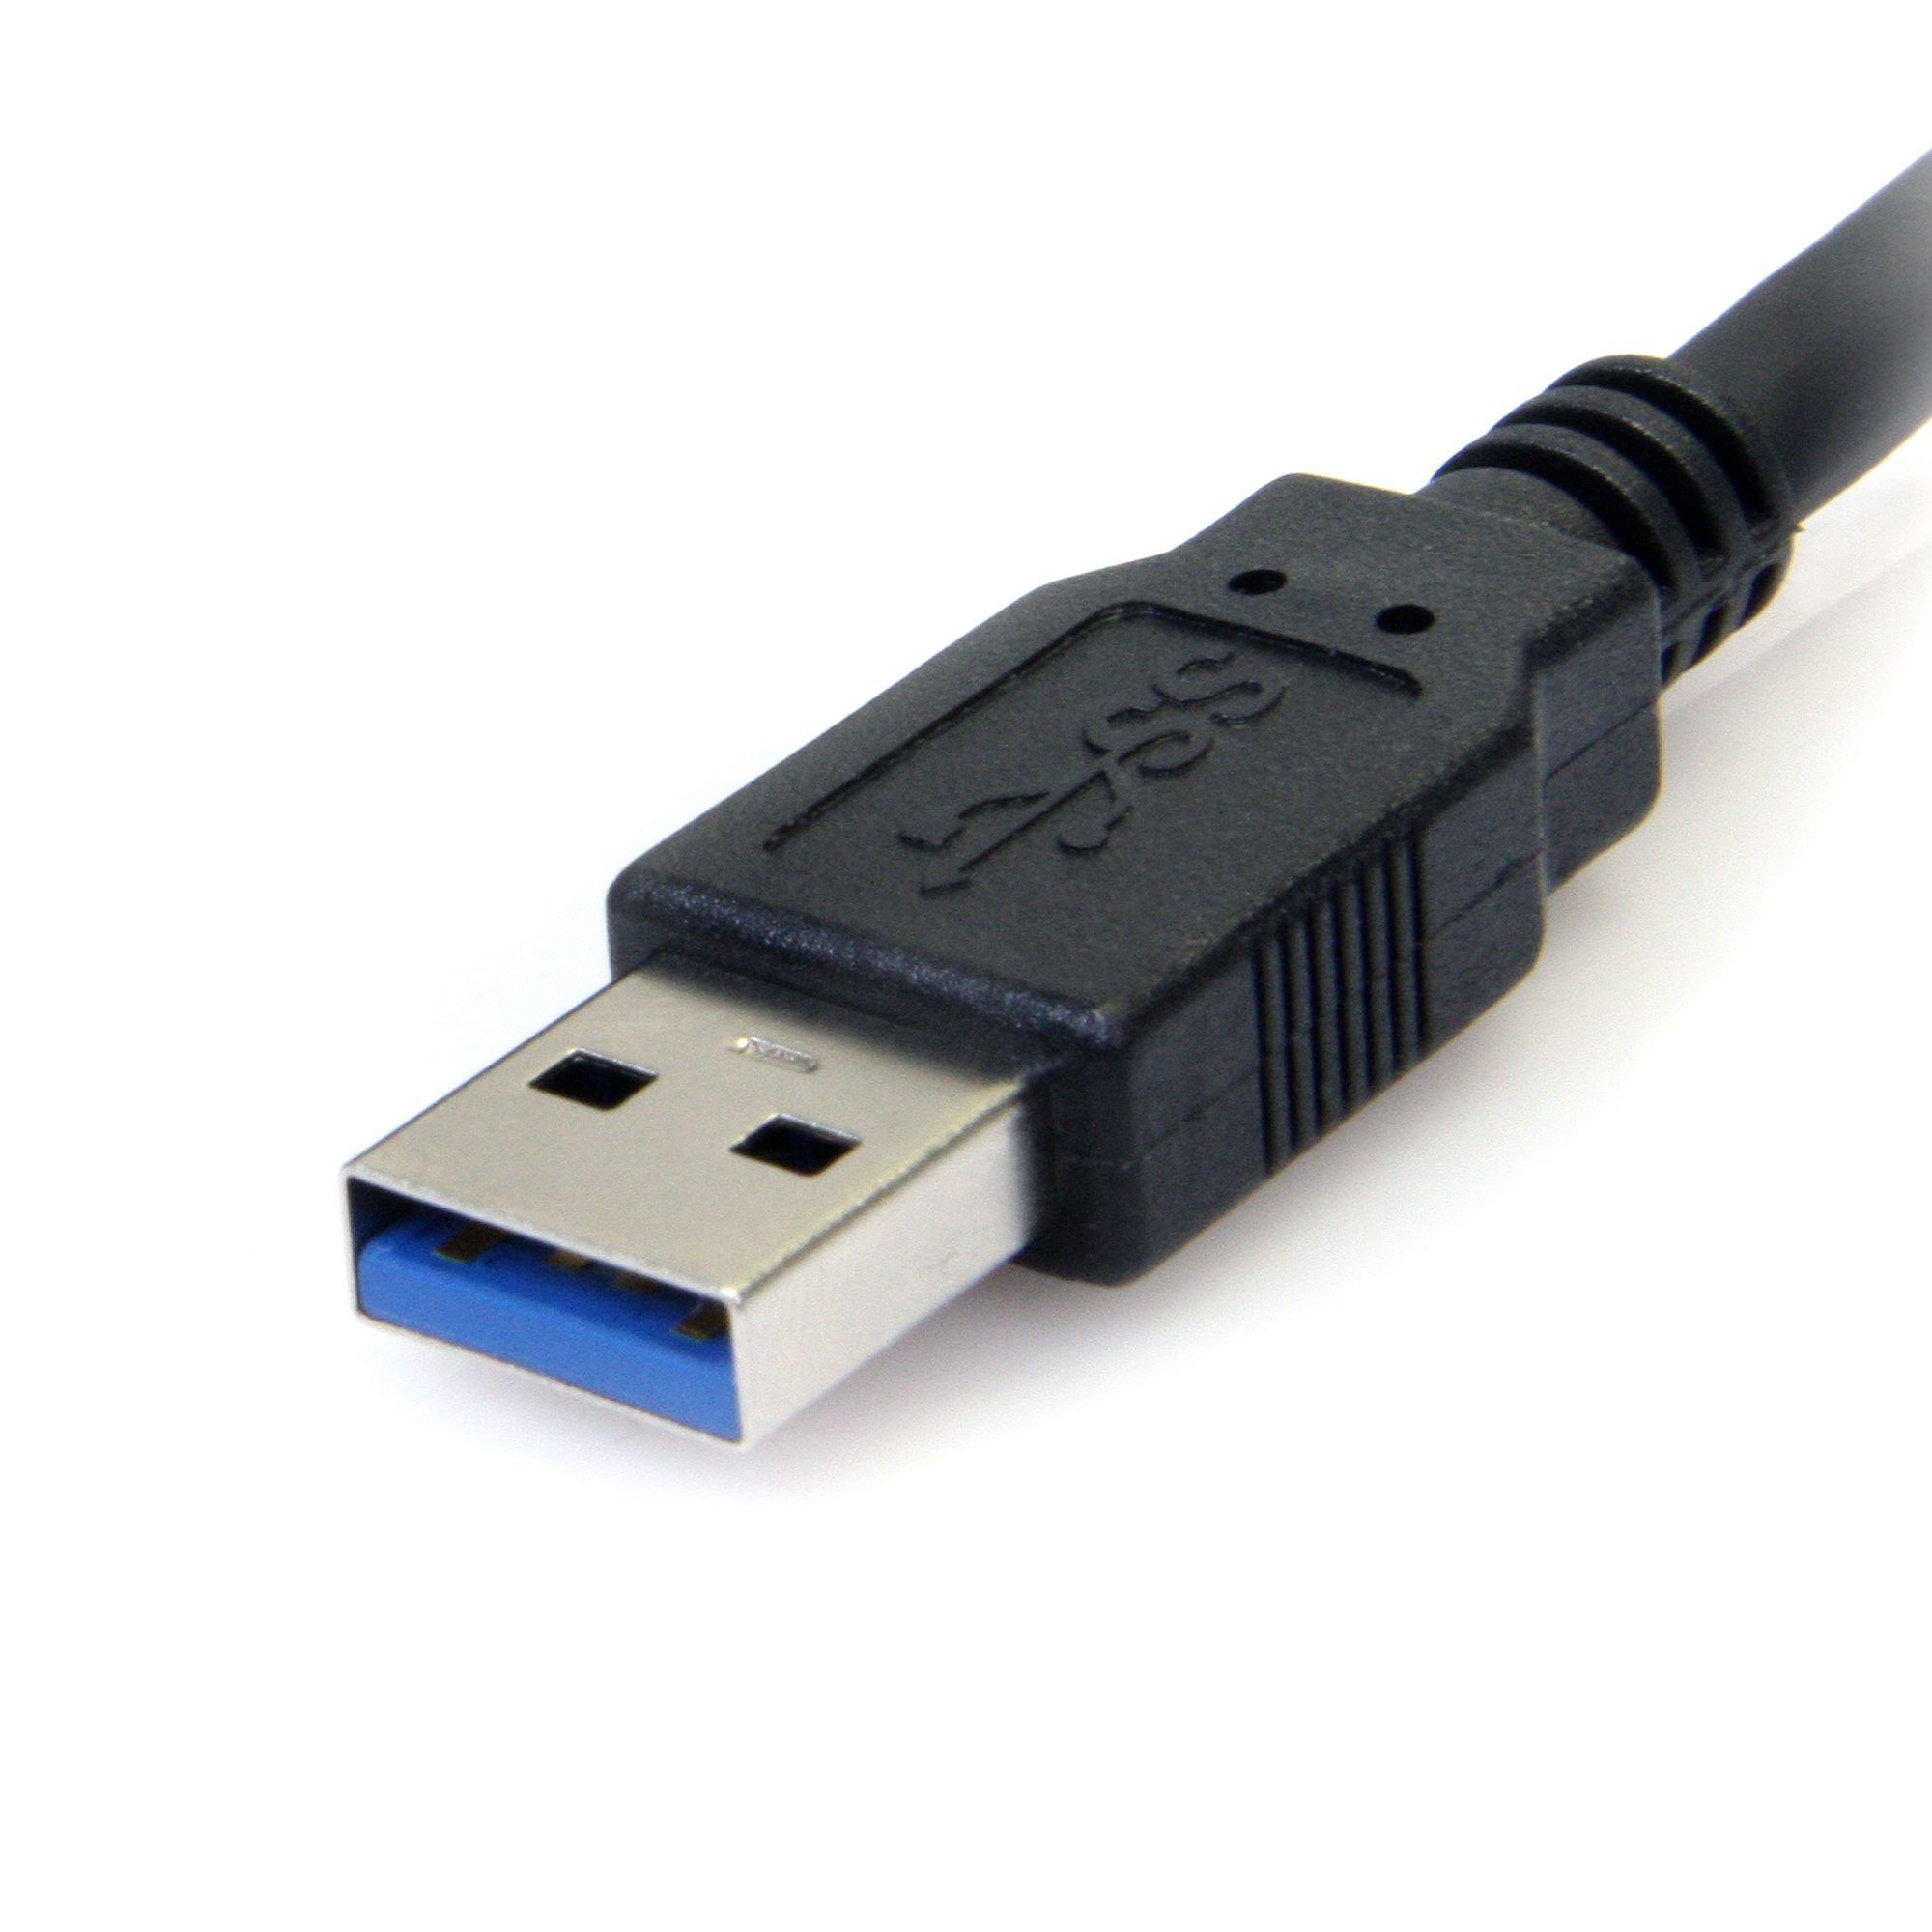 Startech : CABLE USB ACTIF A VERS B 20 M - M/M - NOIR